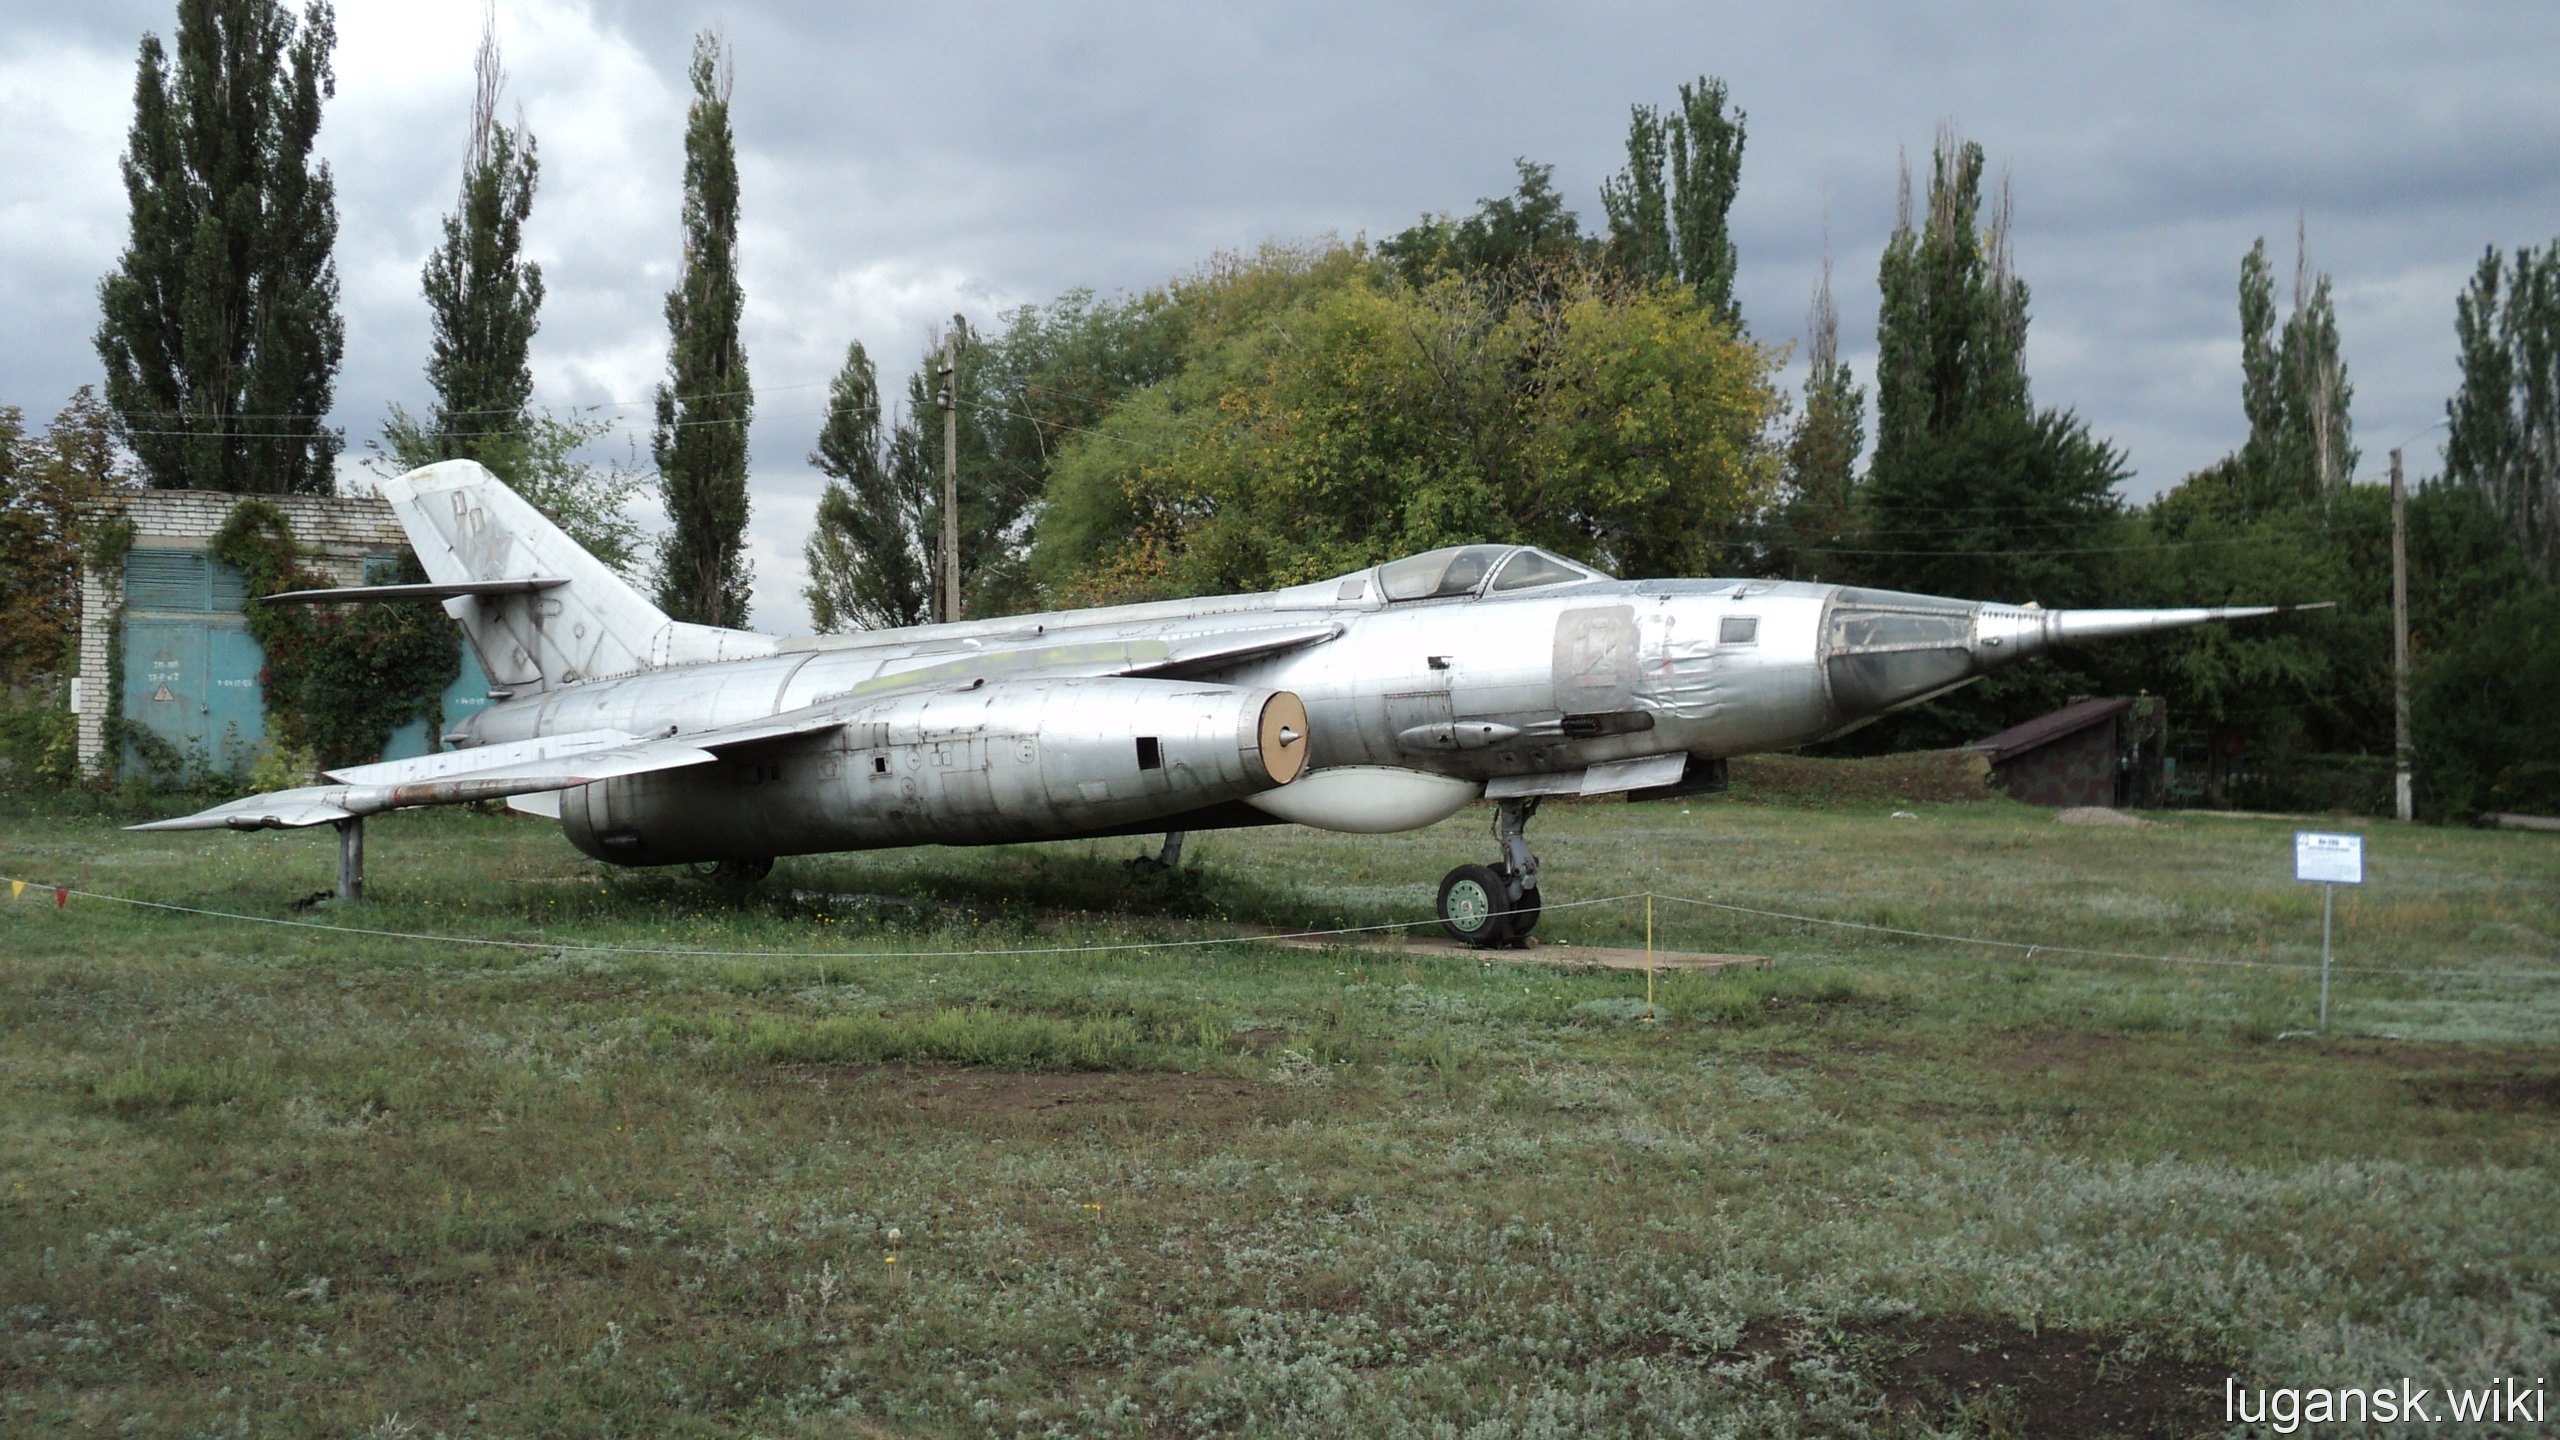 Музей авиационной техники Луганского авиационного завода 